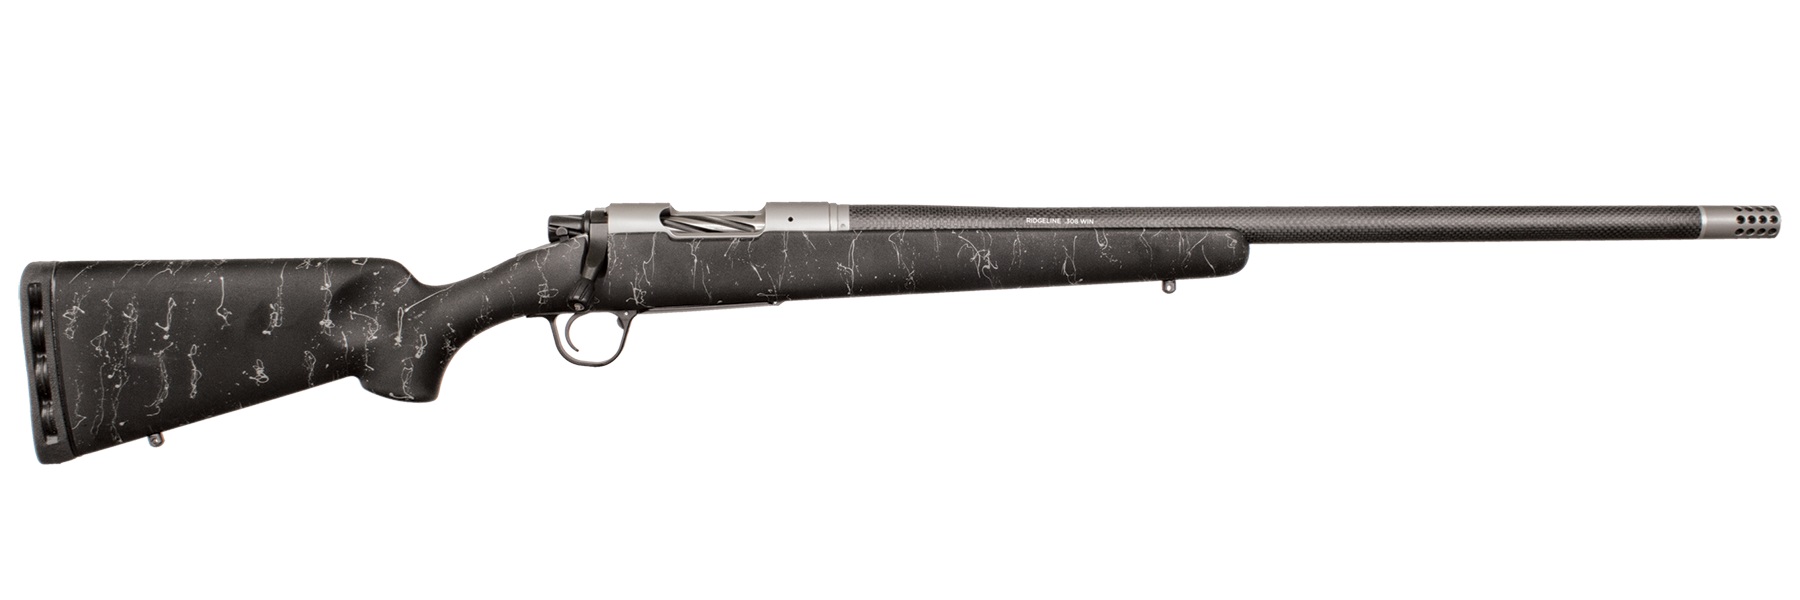 Christensen Arms Ridgeline 30-06